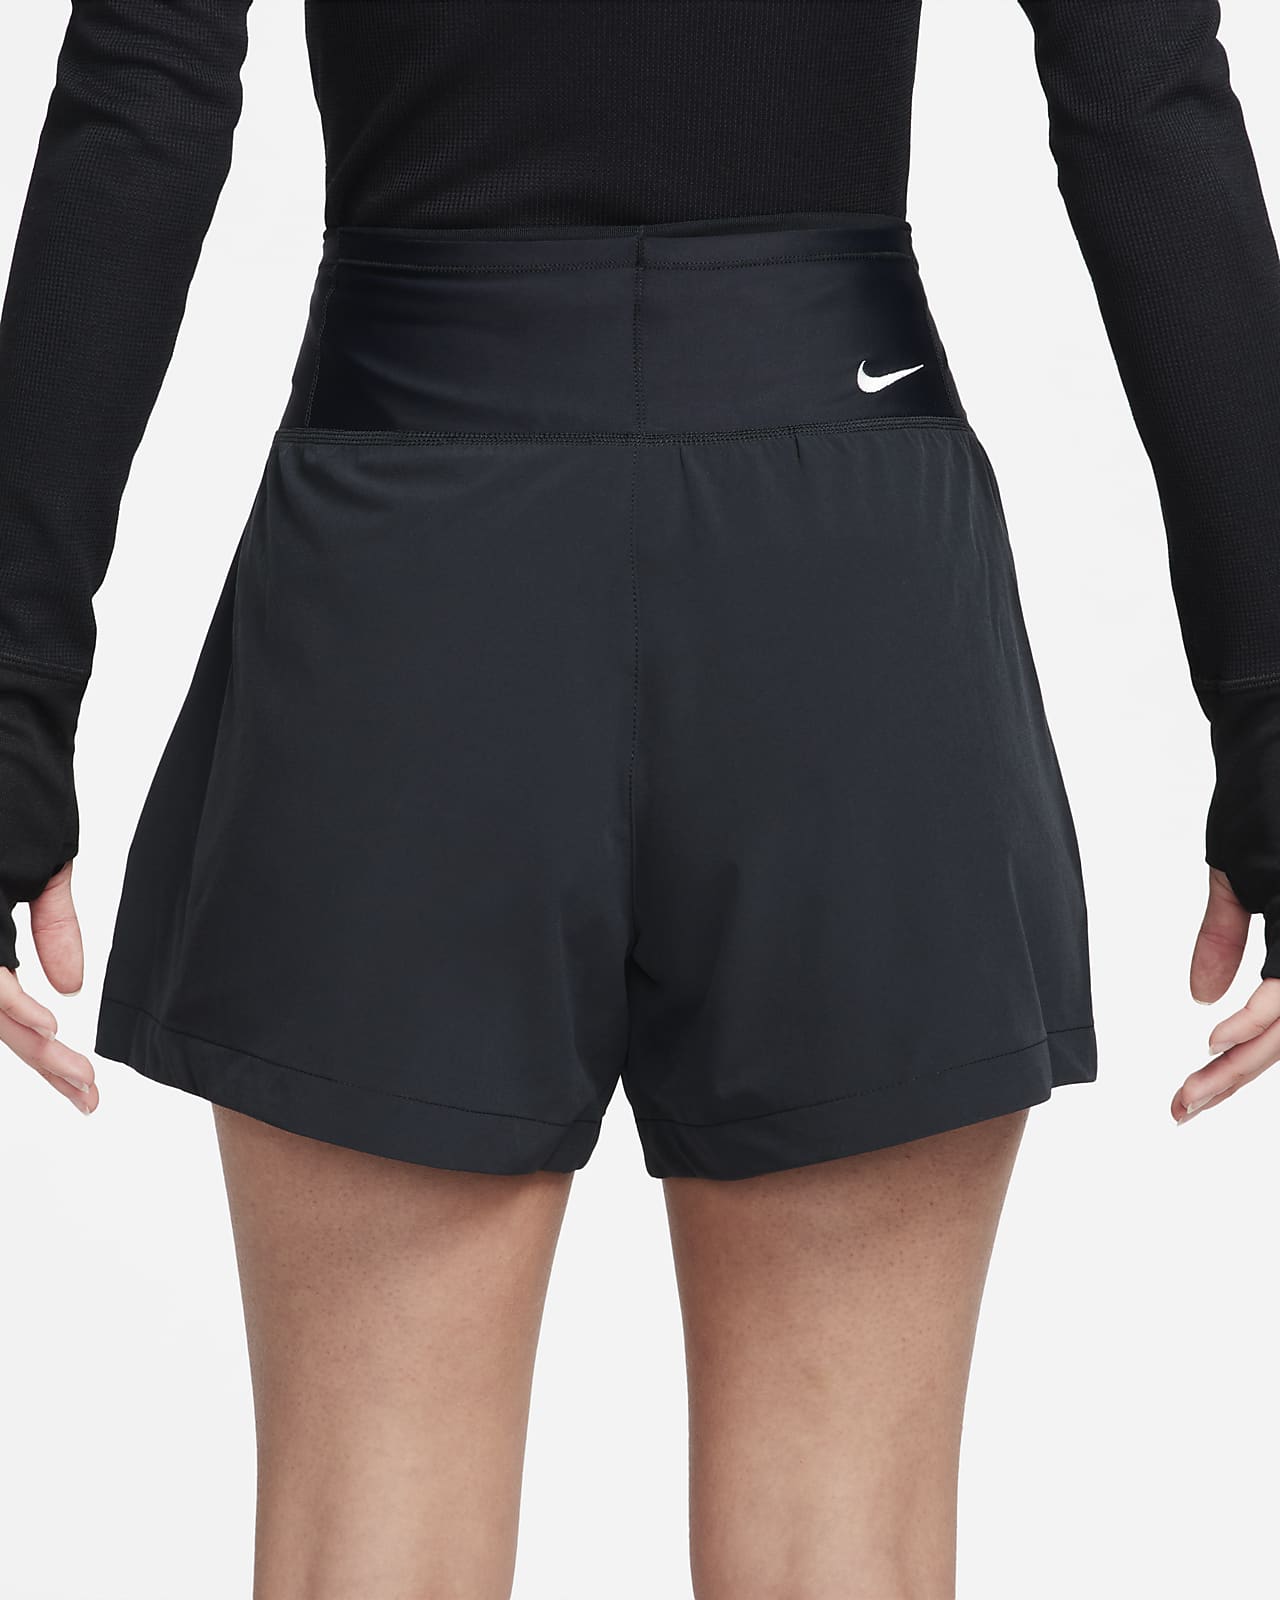 Shorts para mujer Nike ACG Dri-FIT 